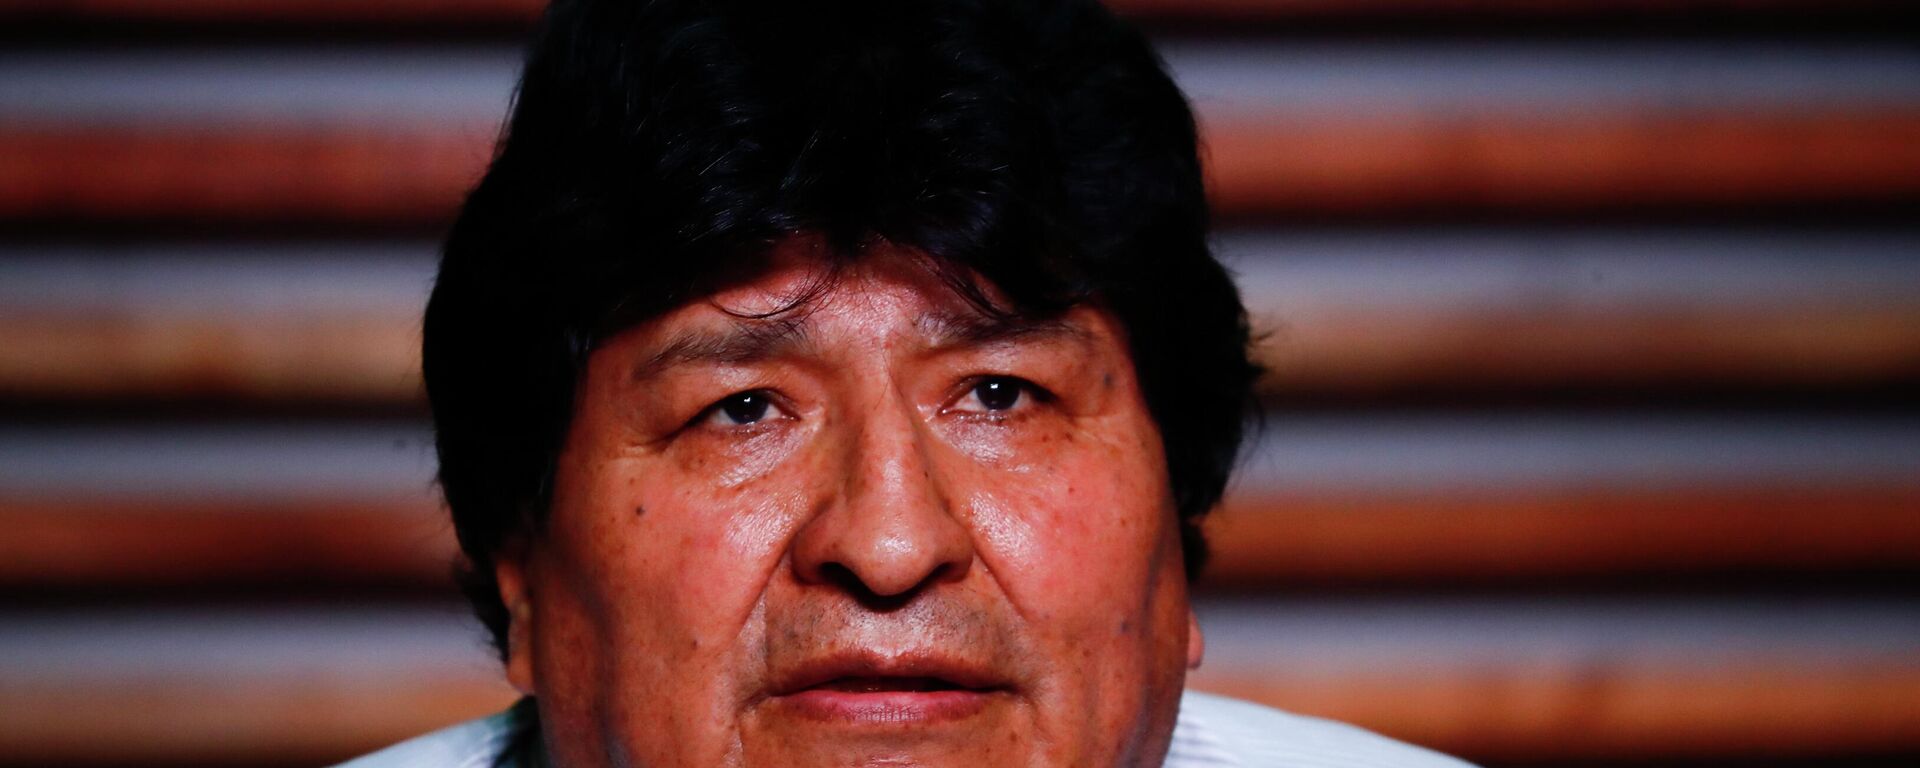 O ex-presidente boliviano Evo Morales em coletiva de imprensa em Buenos Aires, Argentina, após as eleições gerais em seu país natal, 19 de outubro de 2020 - Sputnik Brasil, 1920, 07.06.2022